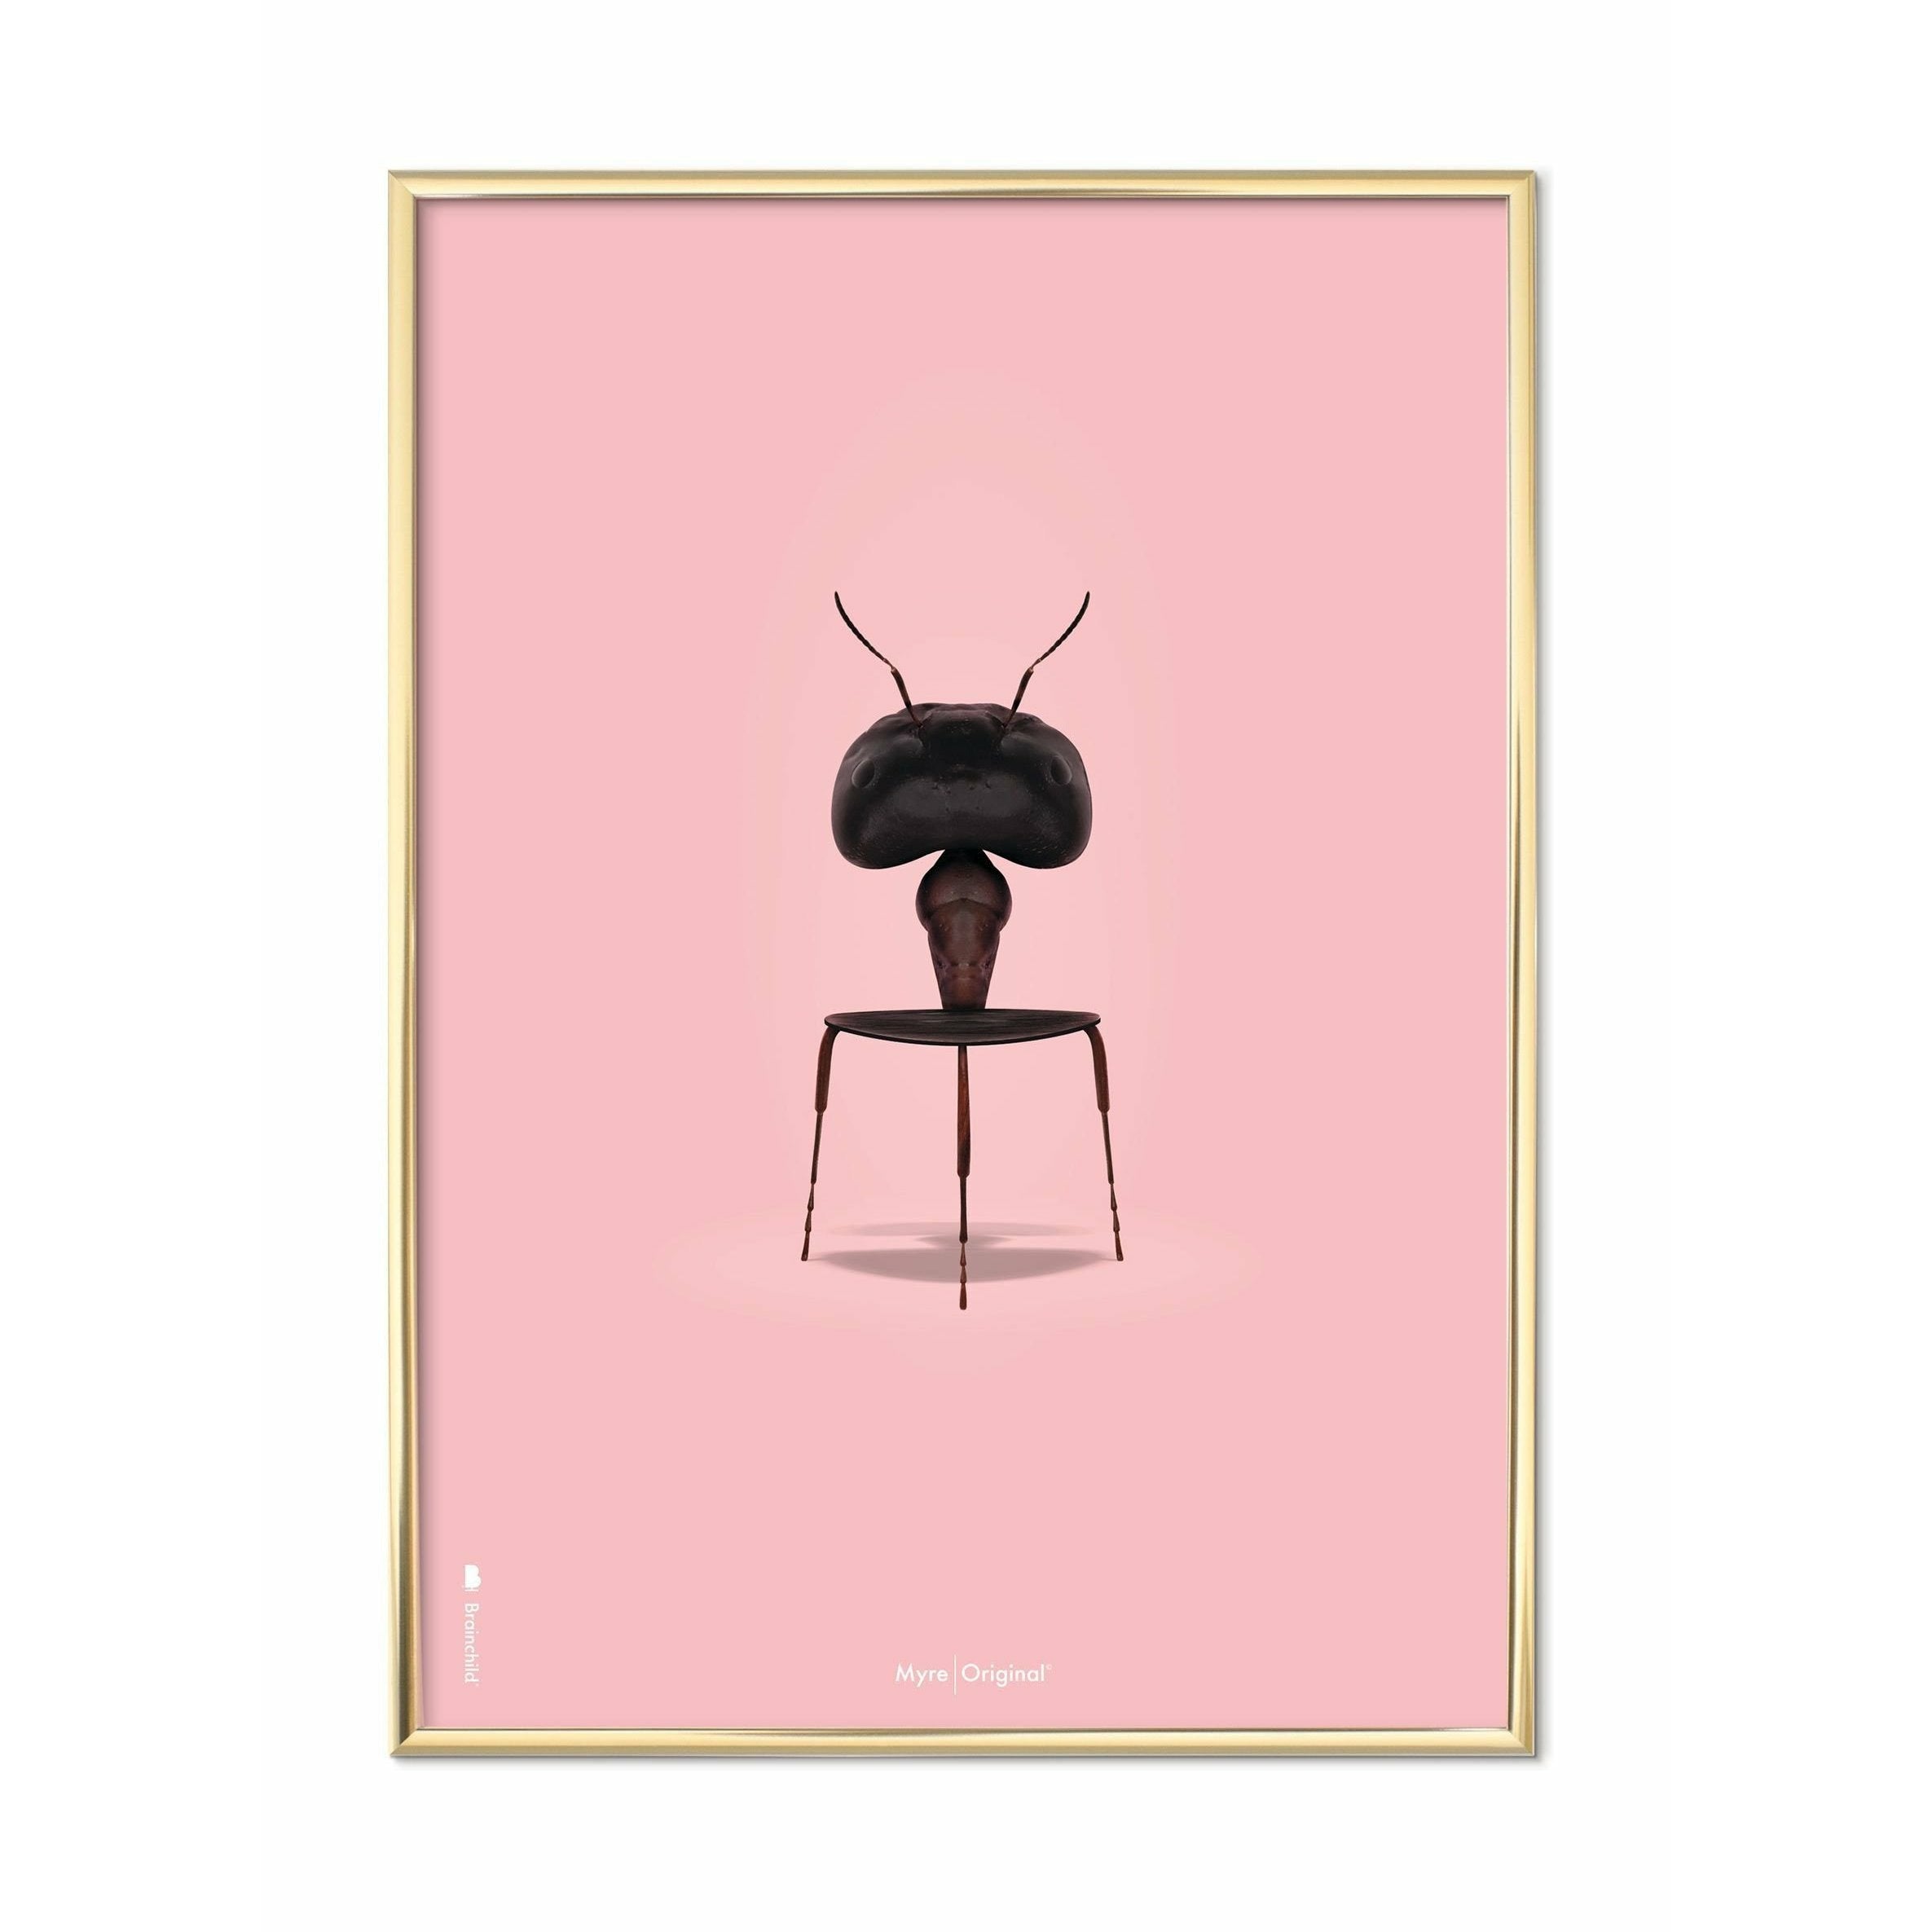 Brainchild Ant Classic plakát, mosazný barevný rám A5, růžové pozadí